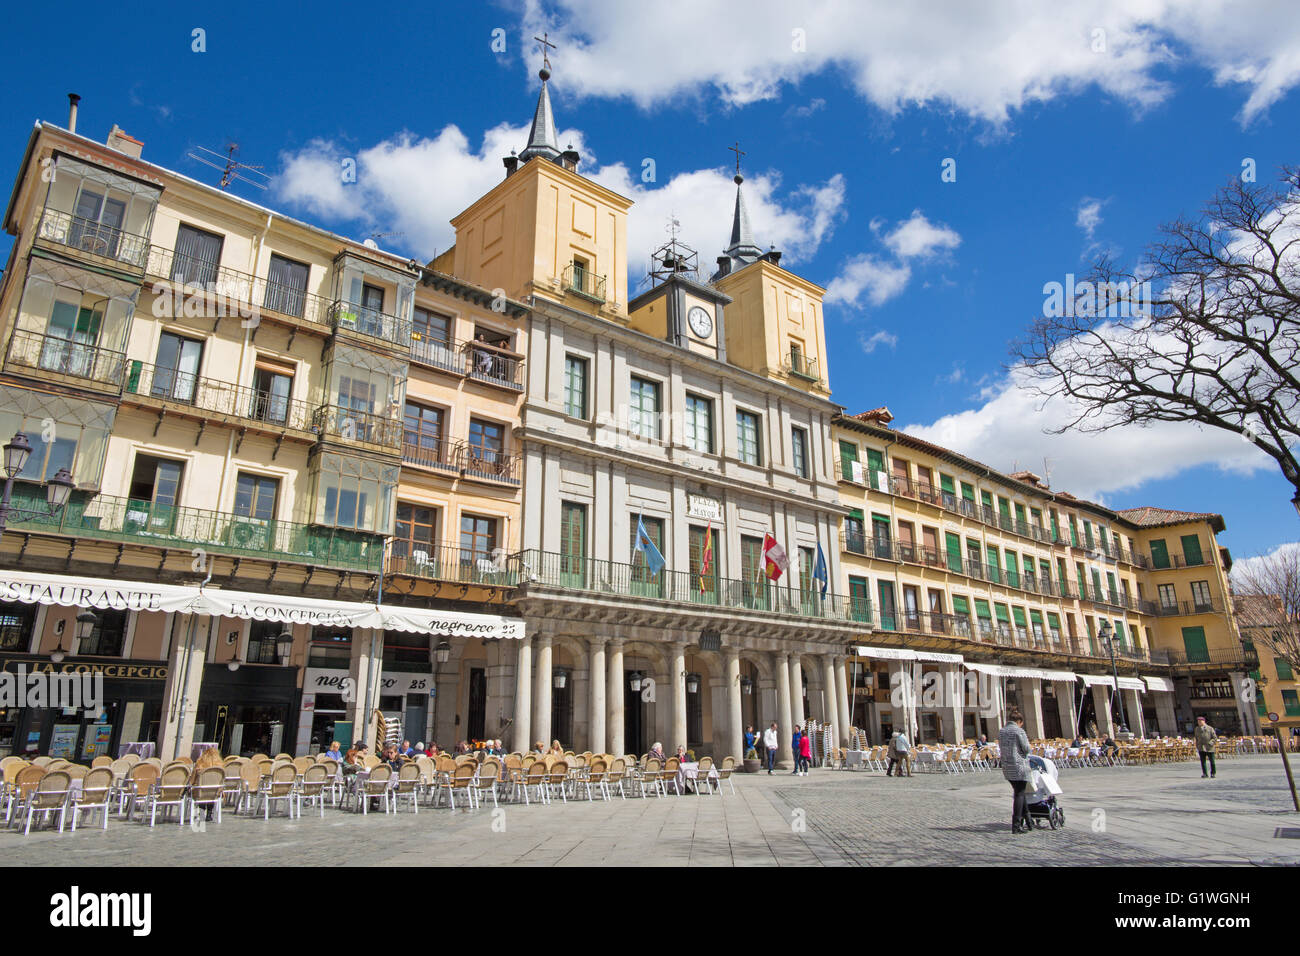 SEGOVIA, SPAIN, APRIL - 15, 2016: The Plaza Mayor square. Stock Photo